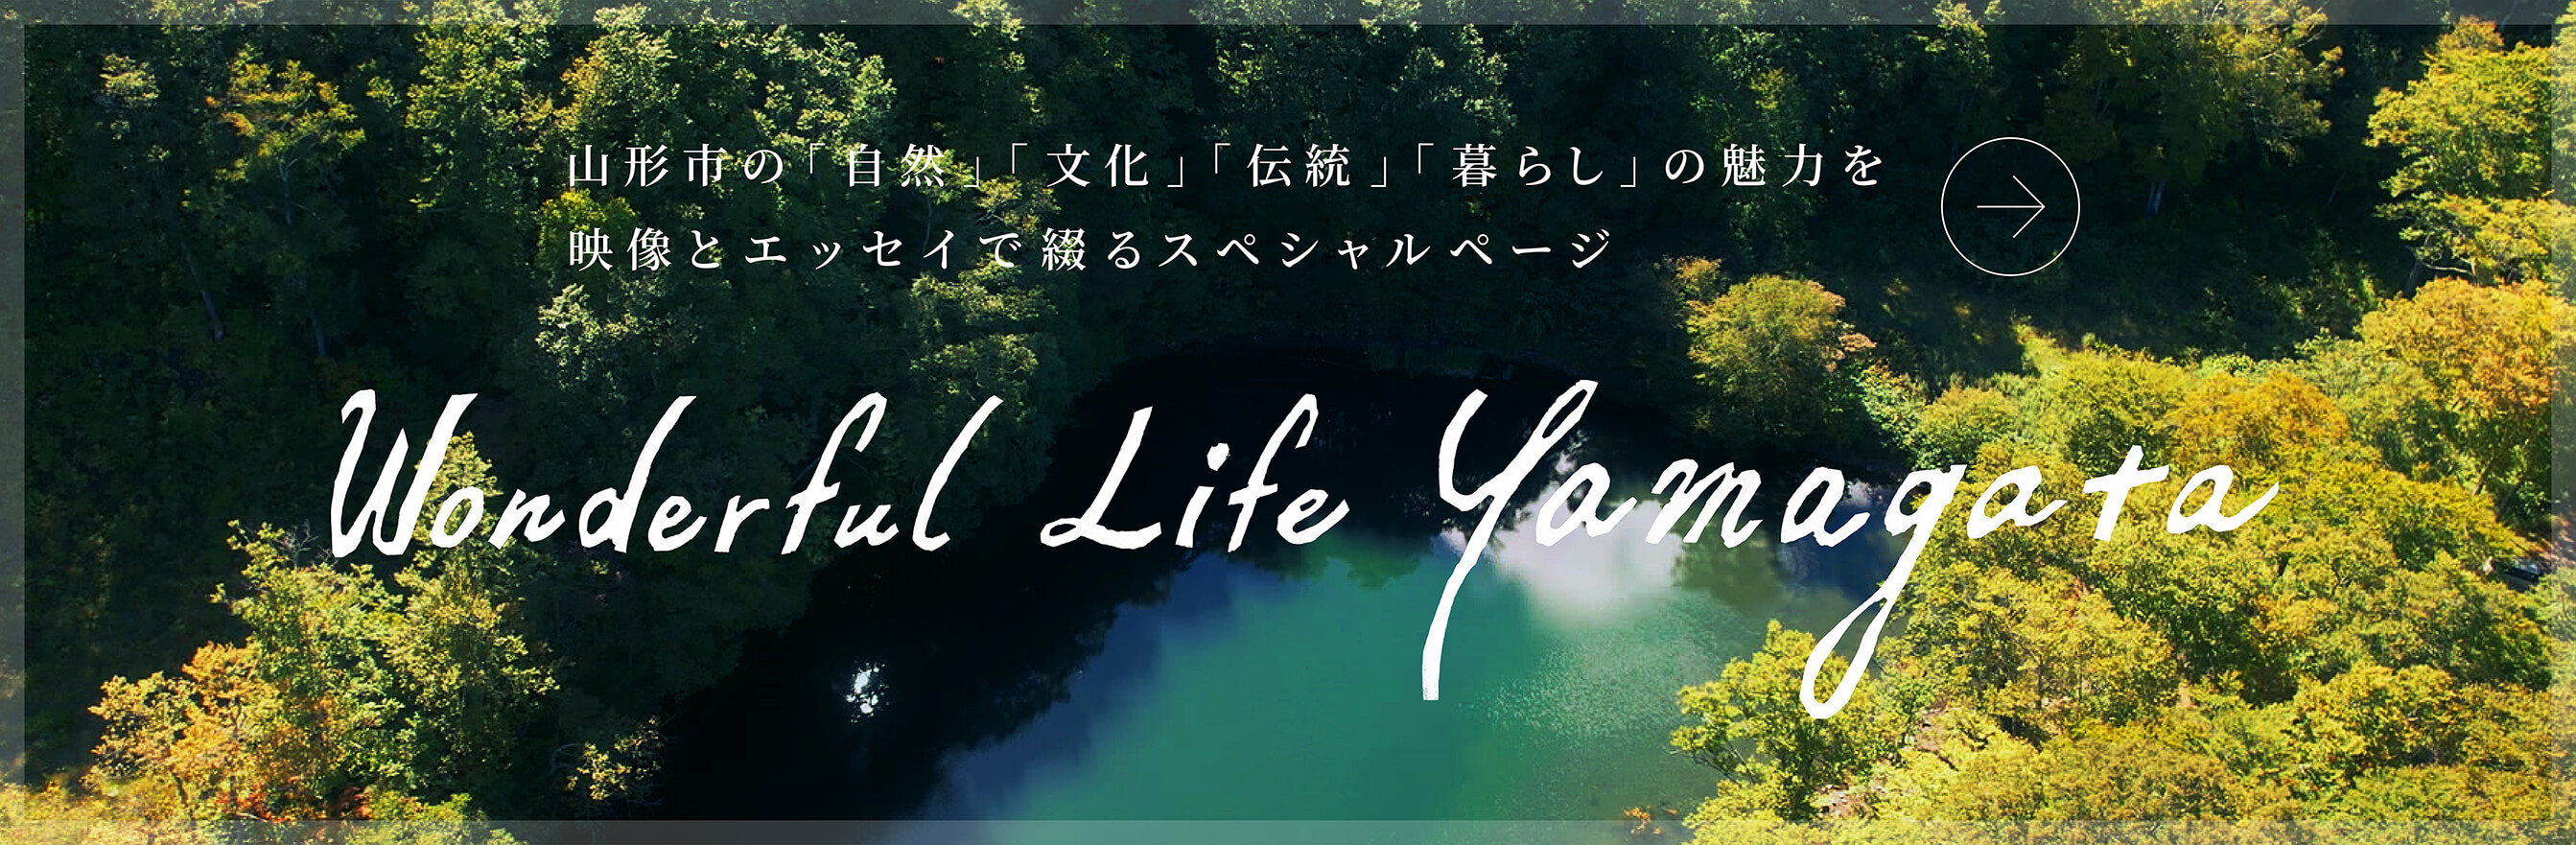 山形市の「自然」「文化」「伝統」「暮らし」の魅力を映像とエッセイで綴るスペシャルページ Wonderful Life Yamagata